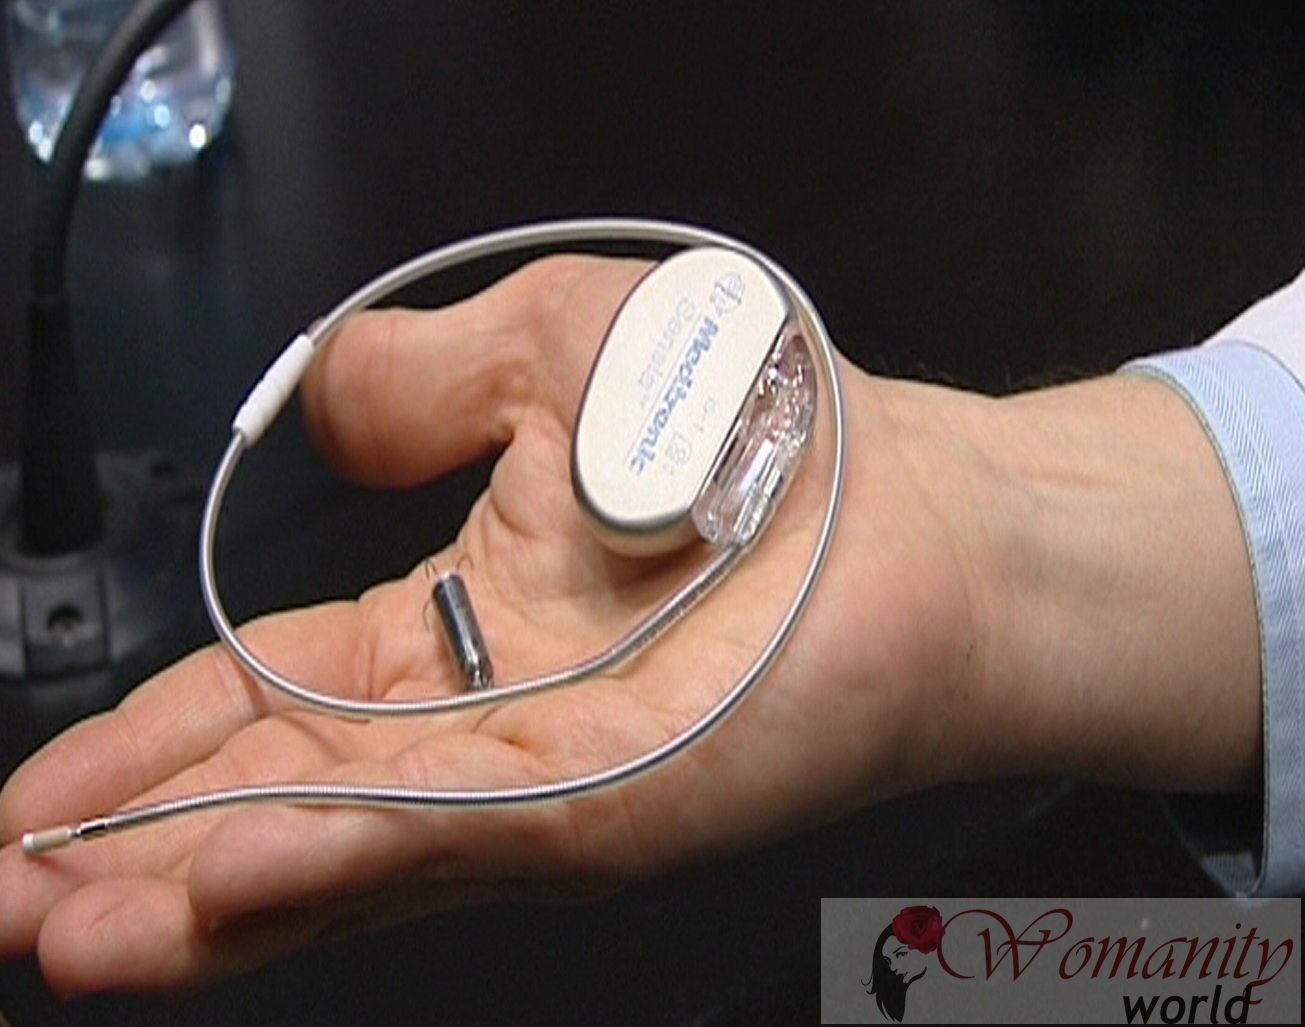 De vooruitgang in de cardiologie: Op weg naar een pacemaker draadloze